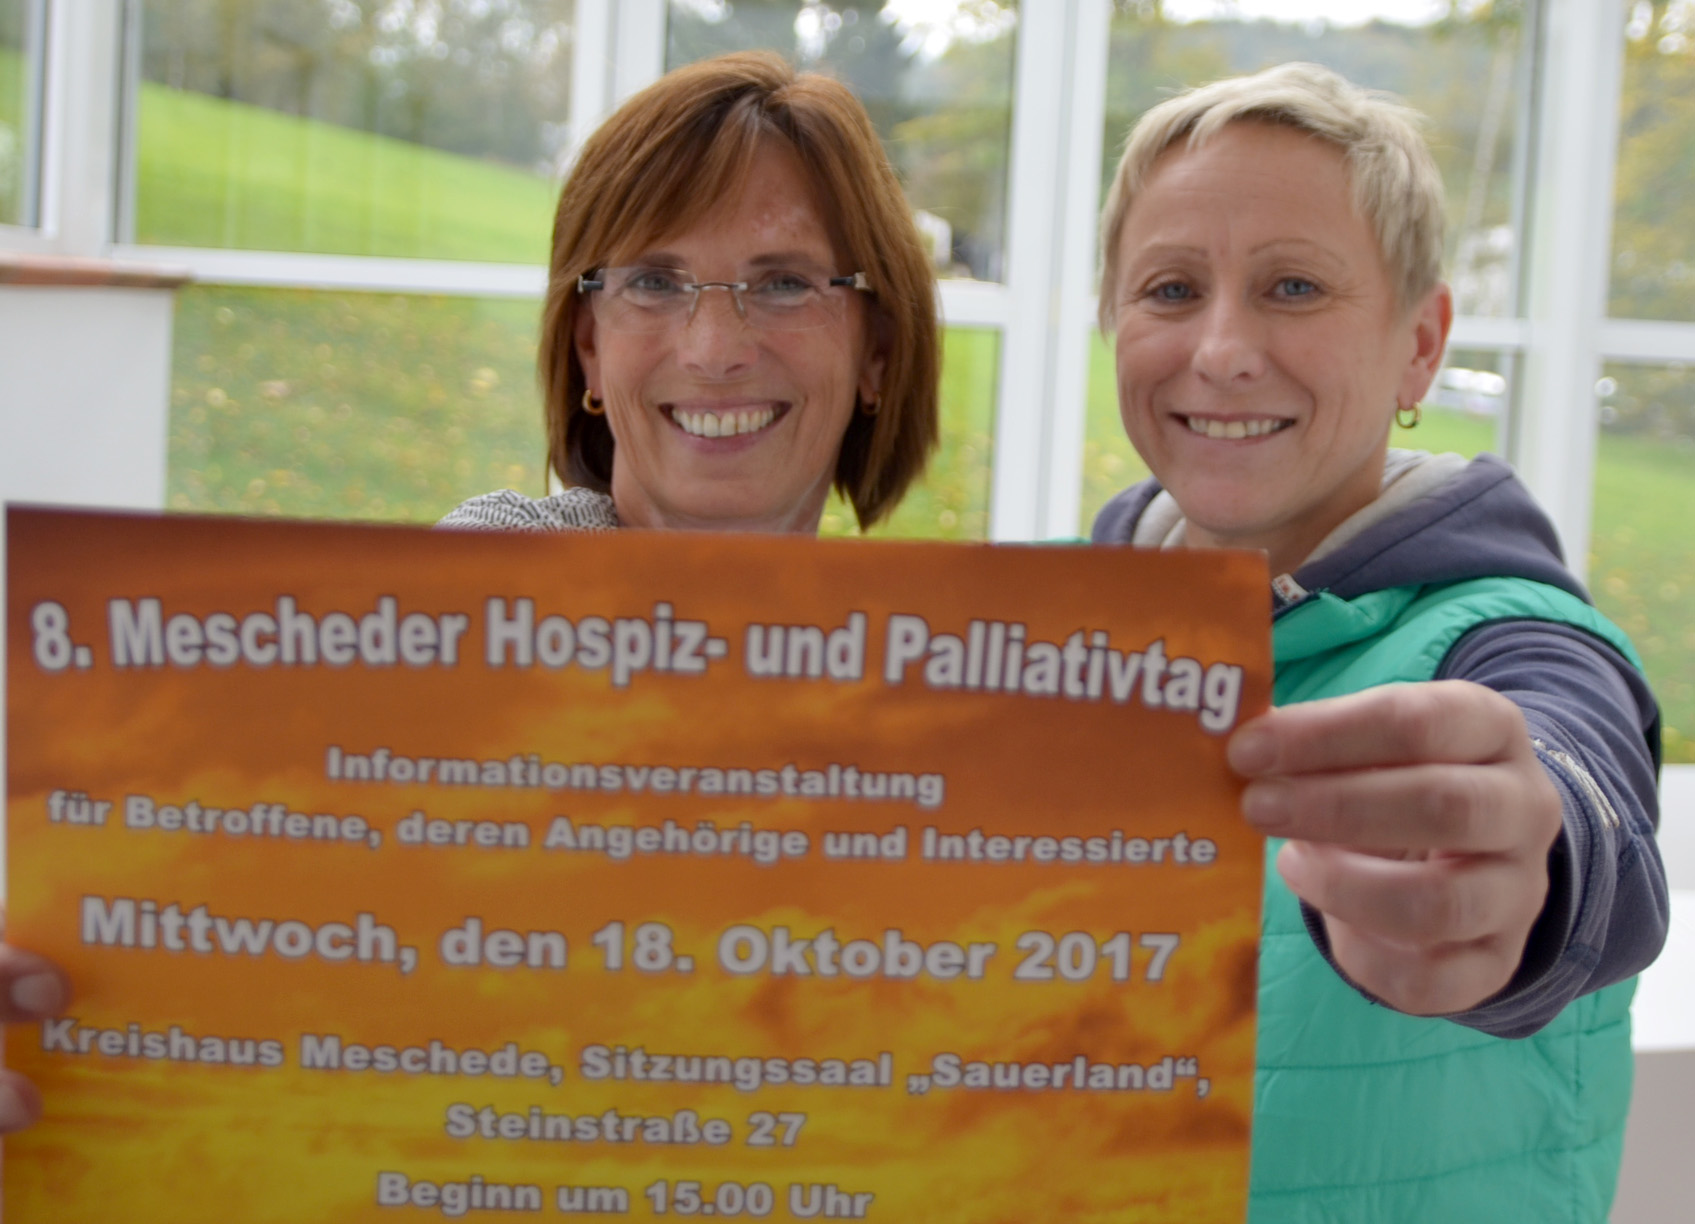 Mescheder Hospiz- und Palliativtag 2017. Foto: St. Walburga-Krankenhaus Meschede